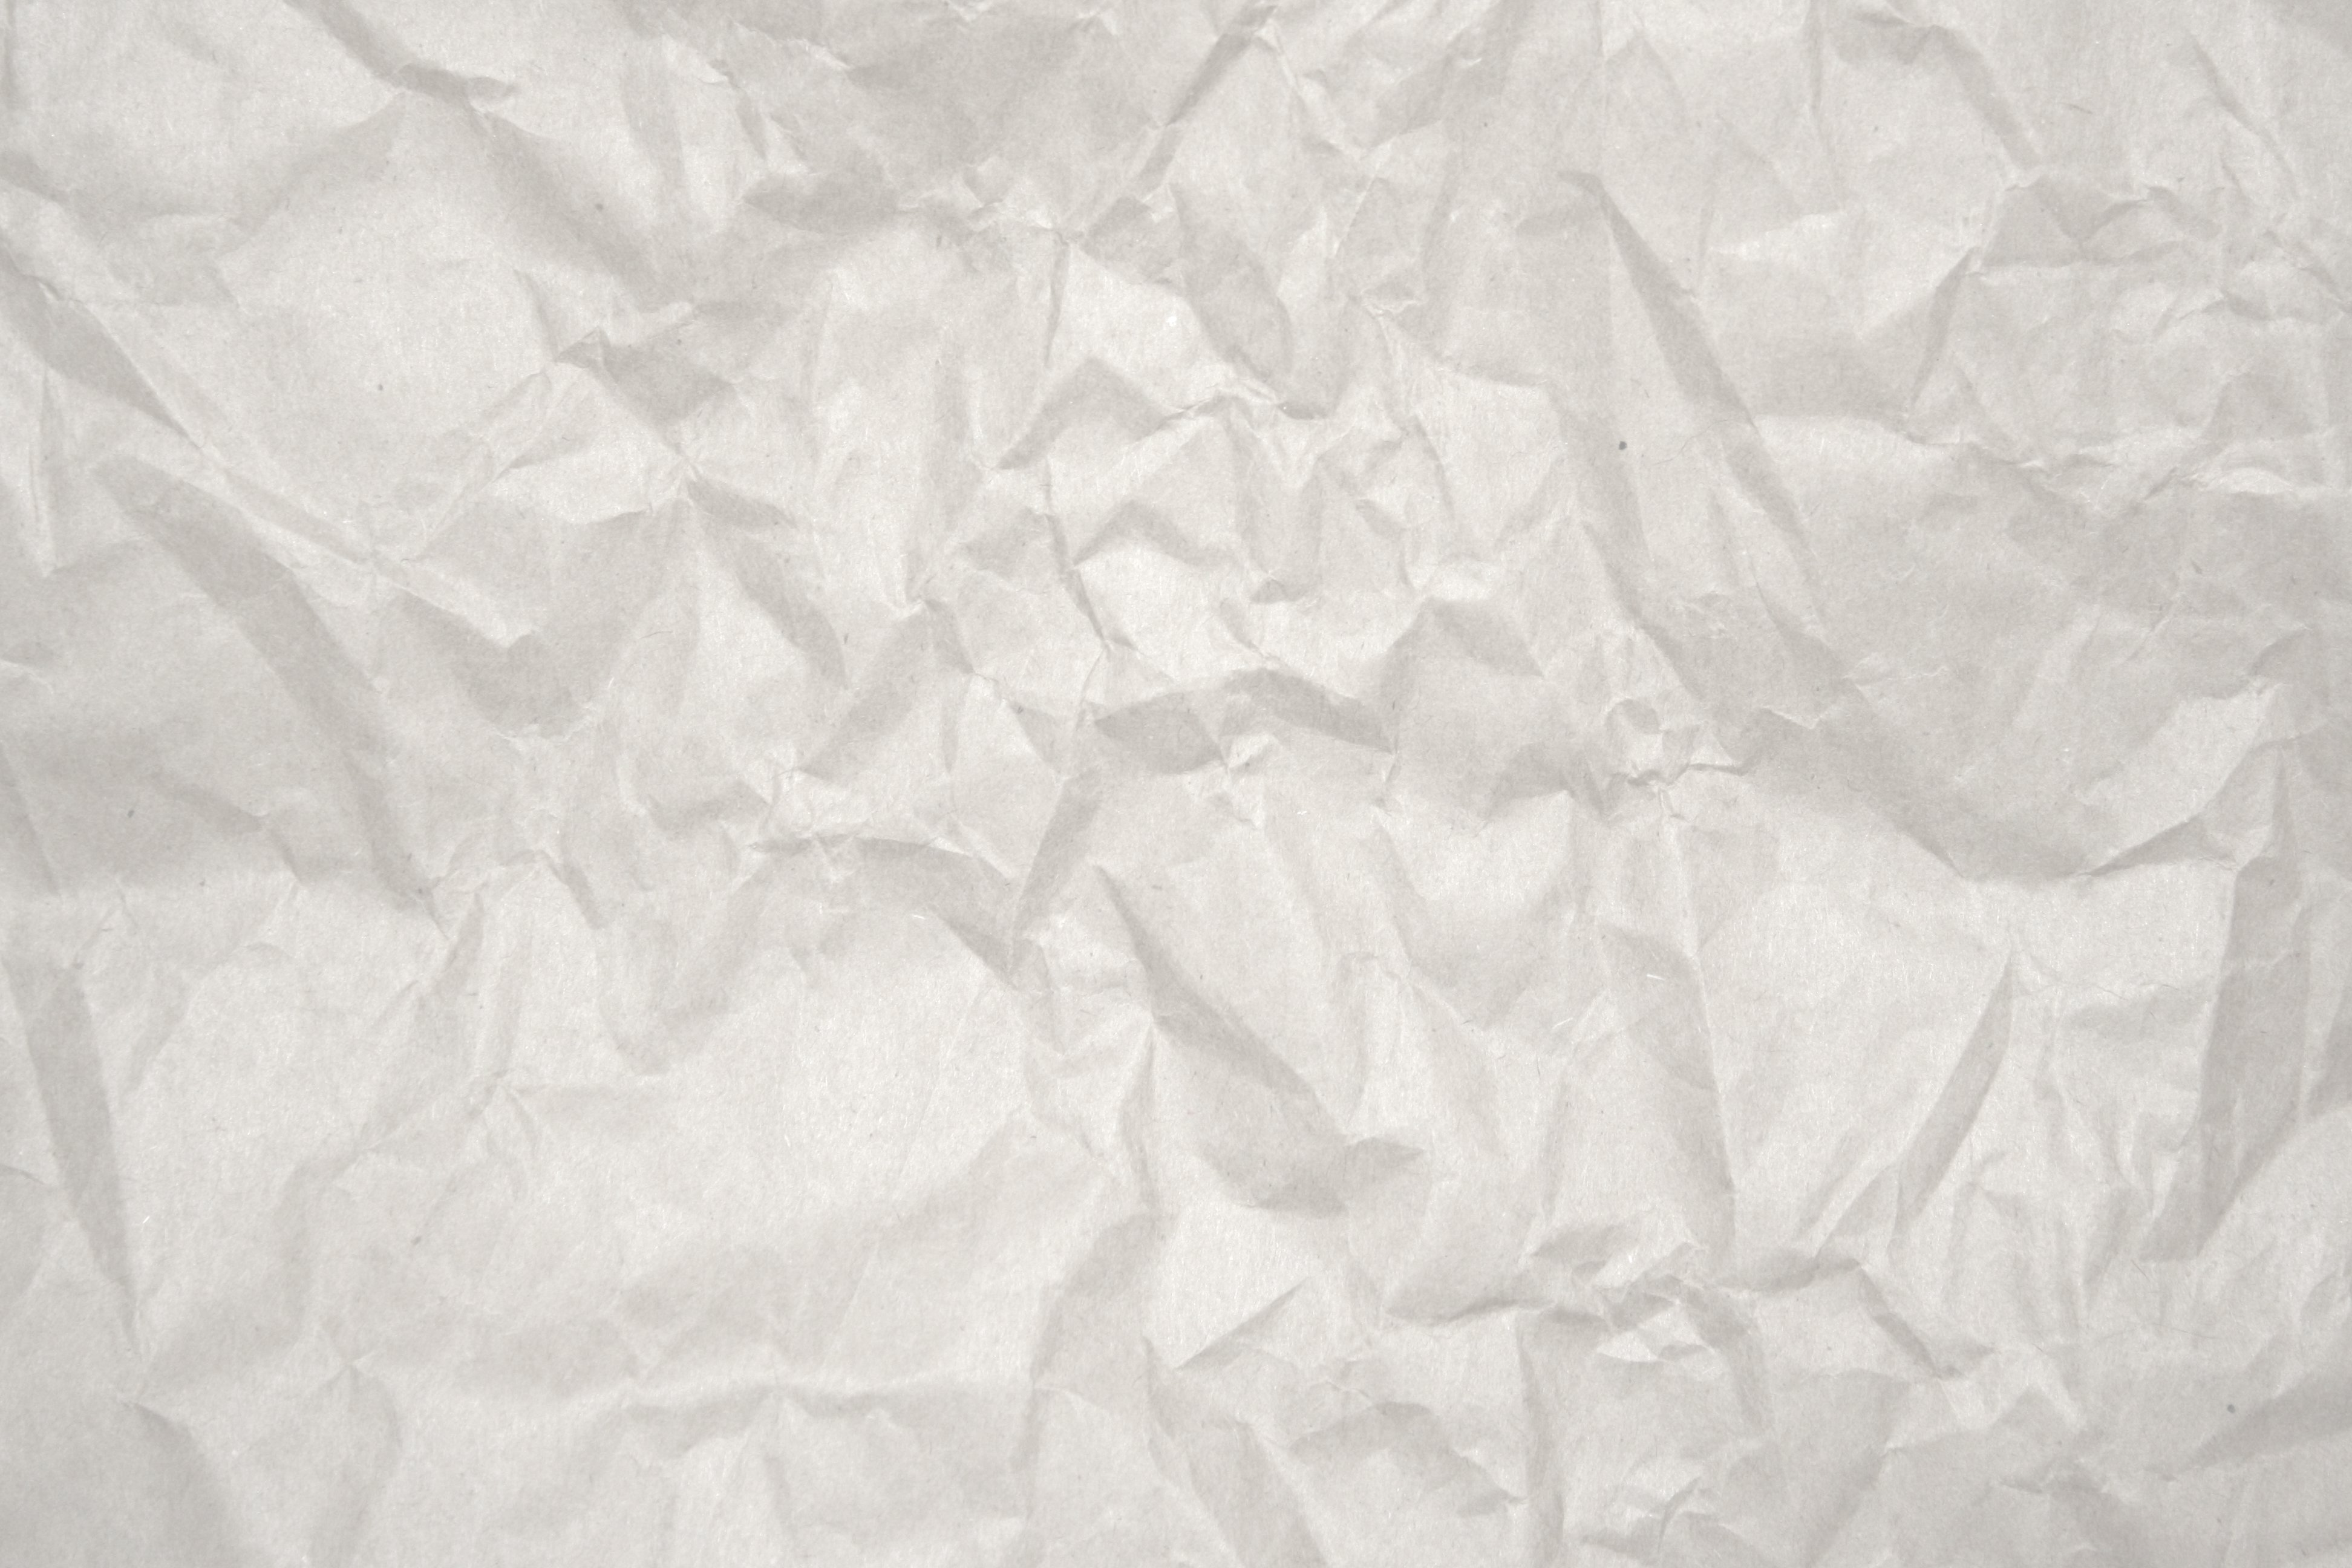 Crumpled White Paper Texture Picture Photograph Photos Public